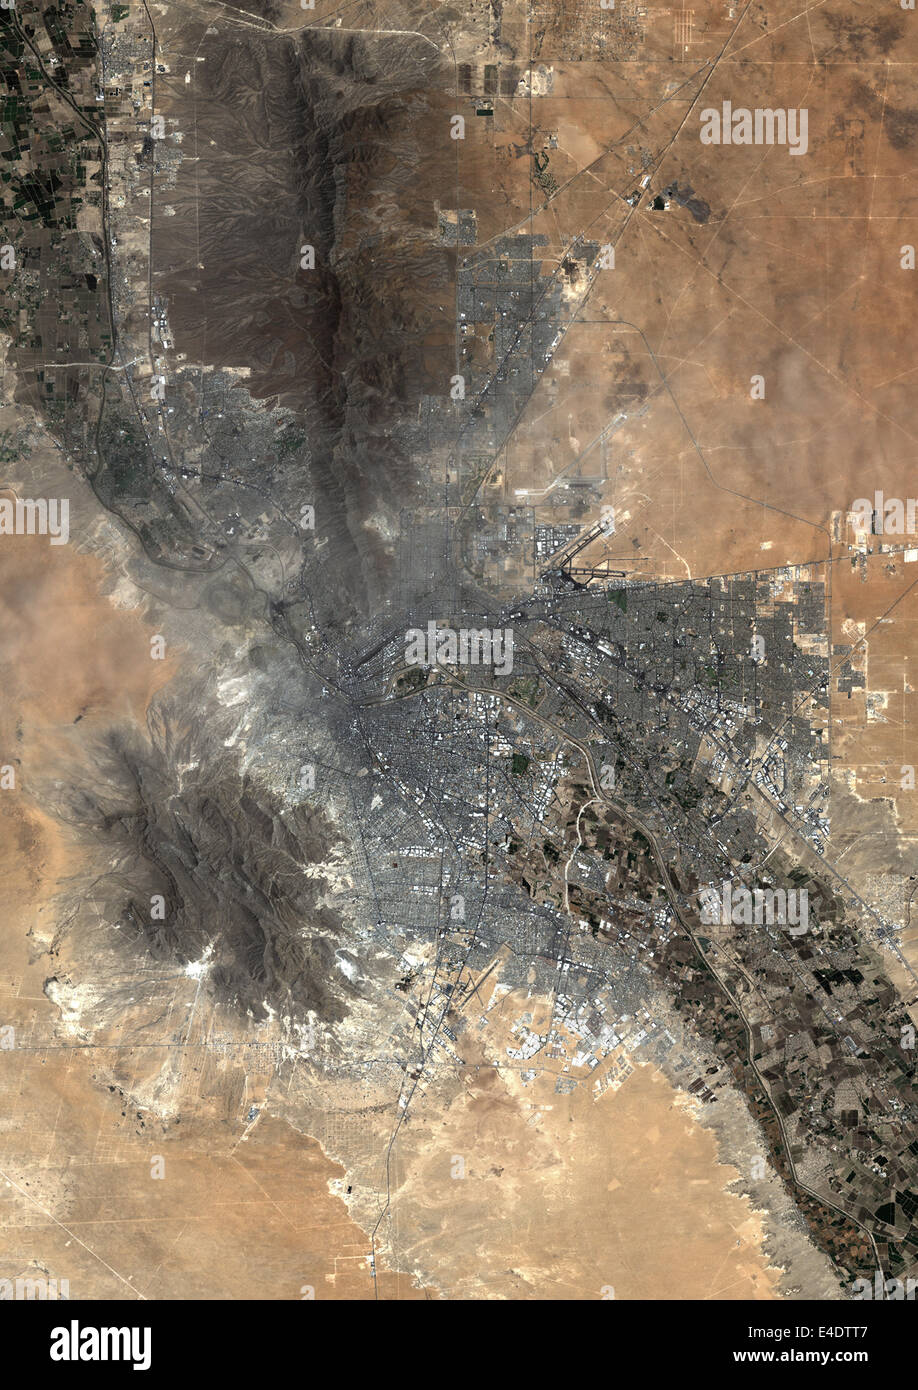 El Paso, Texas, Usa, Echtfarben-Satellitenbild. El Paso, Texas, USA. Echtfarben-Satellitenbild der Stadt von El Paso, genommen Stockfoto